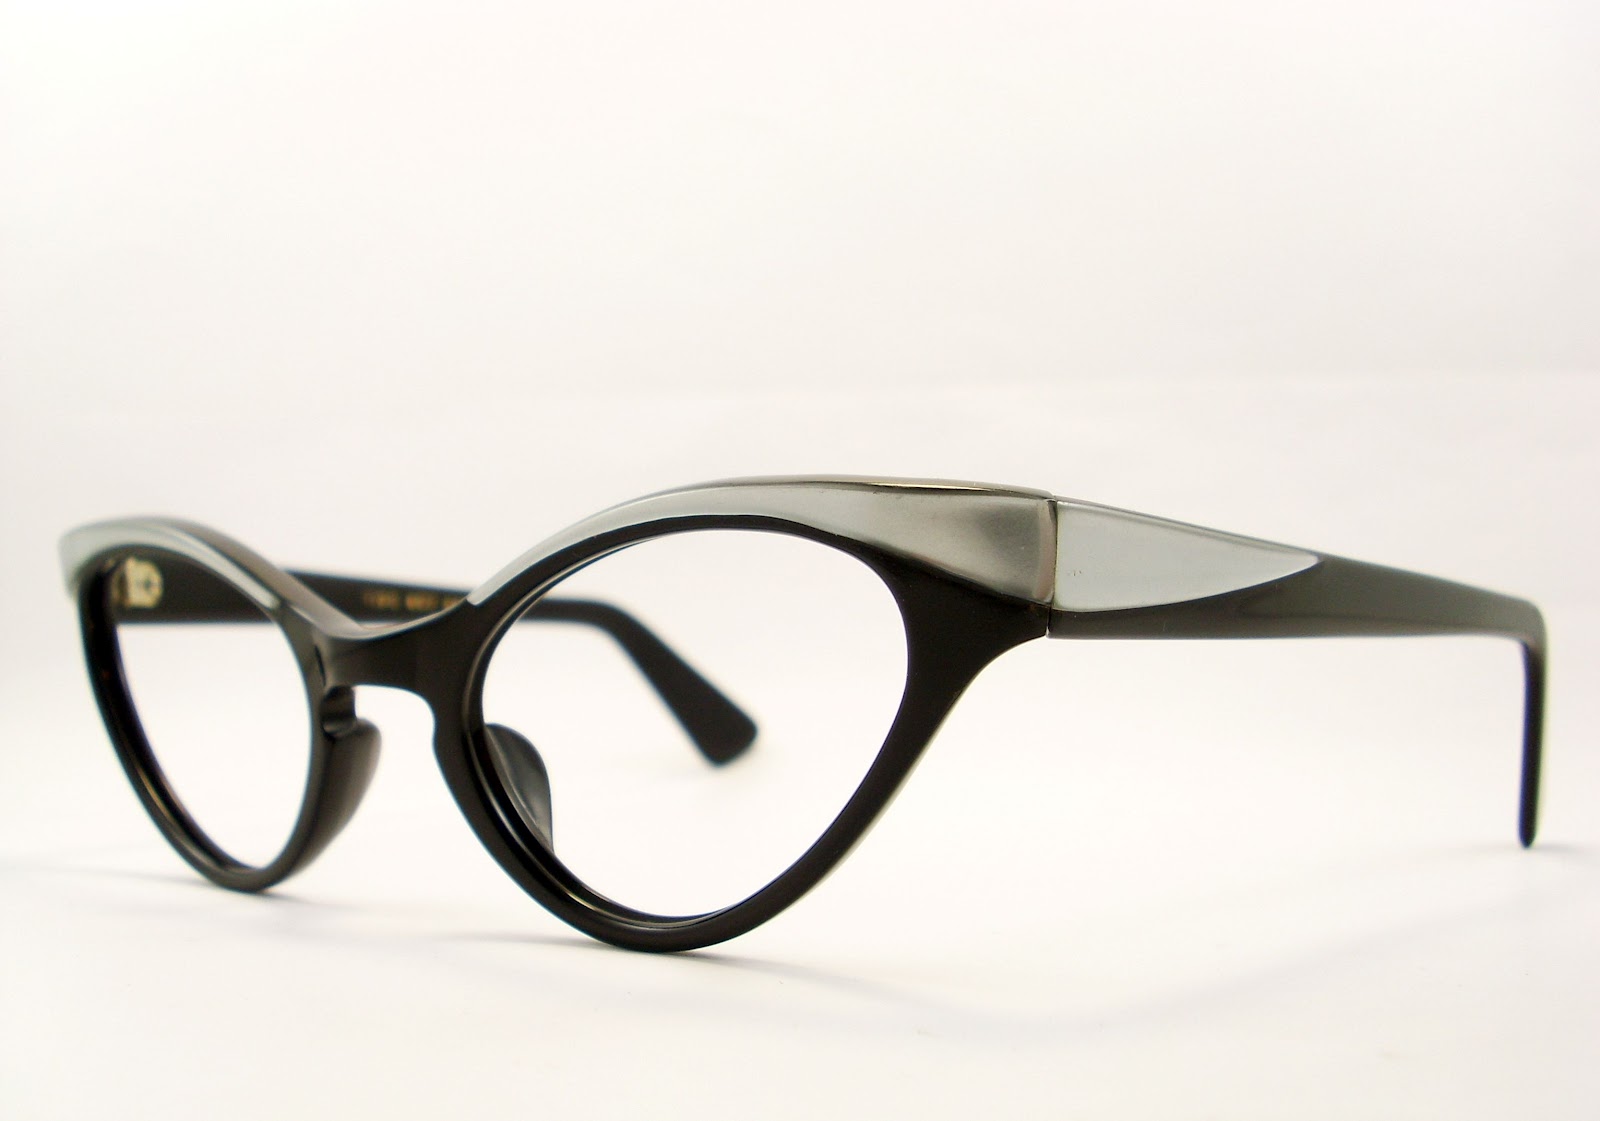 Vintage Cat Eye Glasses Eyeglasses Sunglasses Frame.